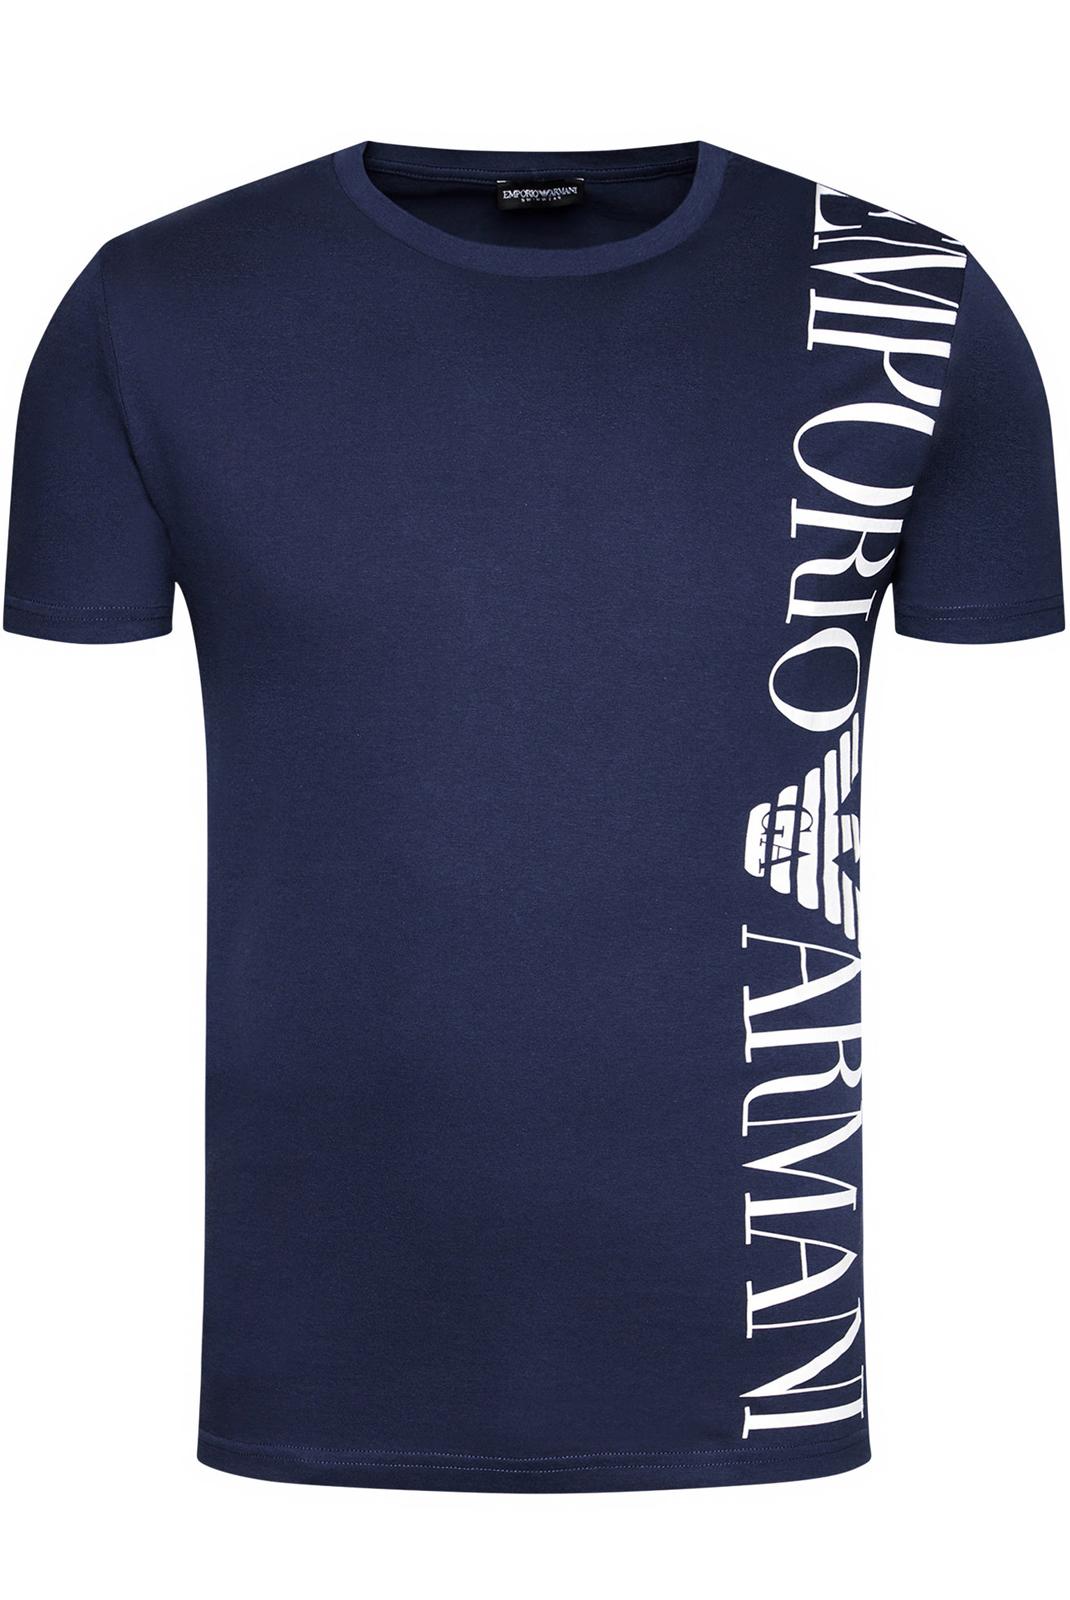  T-shirt bleu manches courtes Emporio Armani - 211831